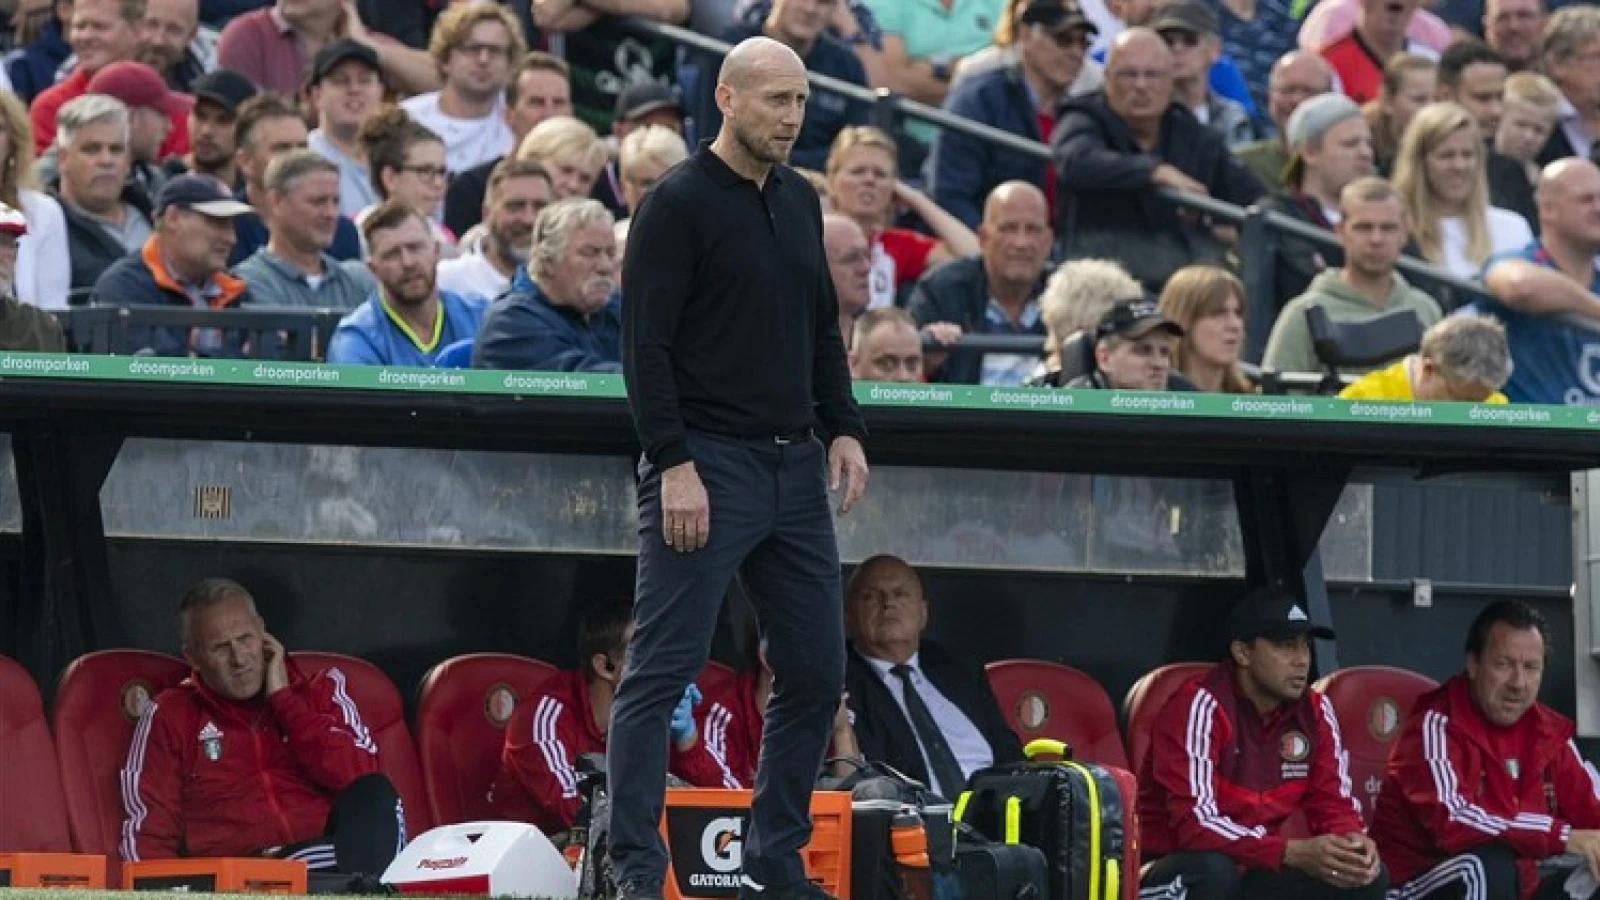 Stam neemt het op voor Feyenoorder: 'Hij kan zichzelf soms naar beneden halen en dat is onnodig, want dat doen anderen al'